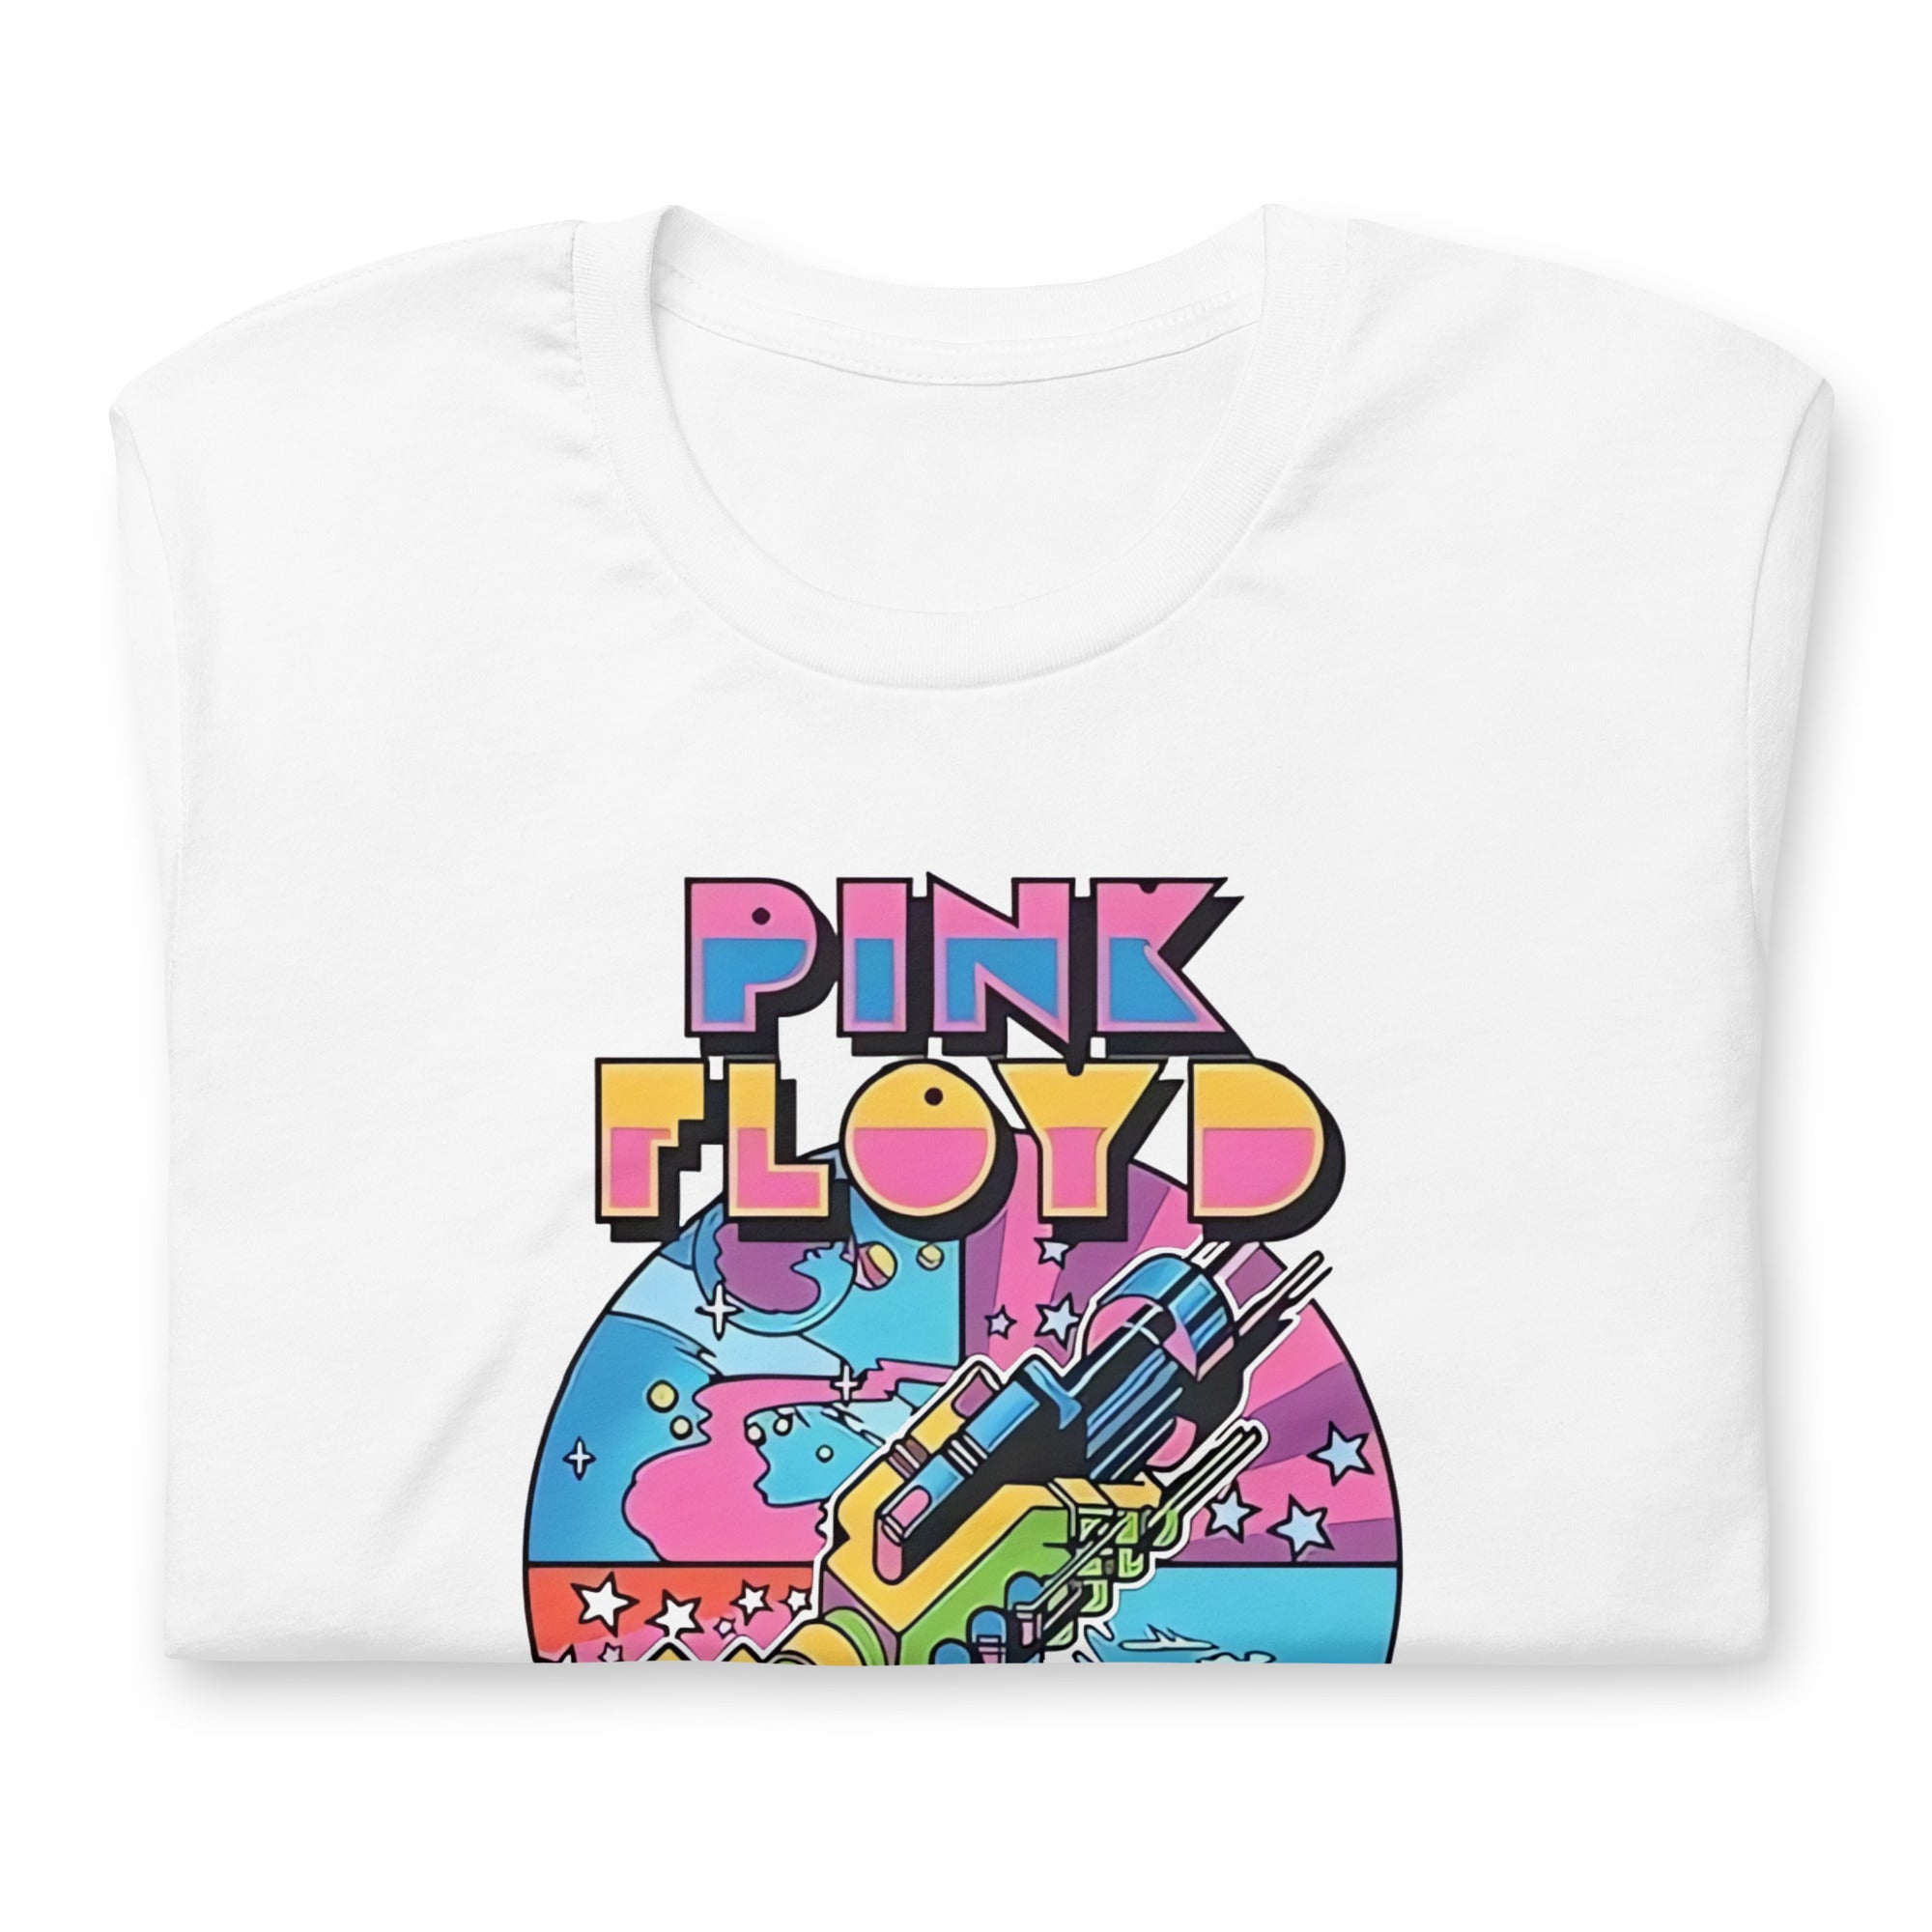 ¡Compra el mejor merchandising en Superstar! Encuentra diseños únicos y de alta calidad, Playera Pink Floyd Speak to me